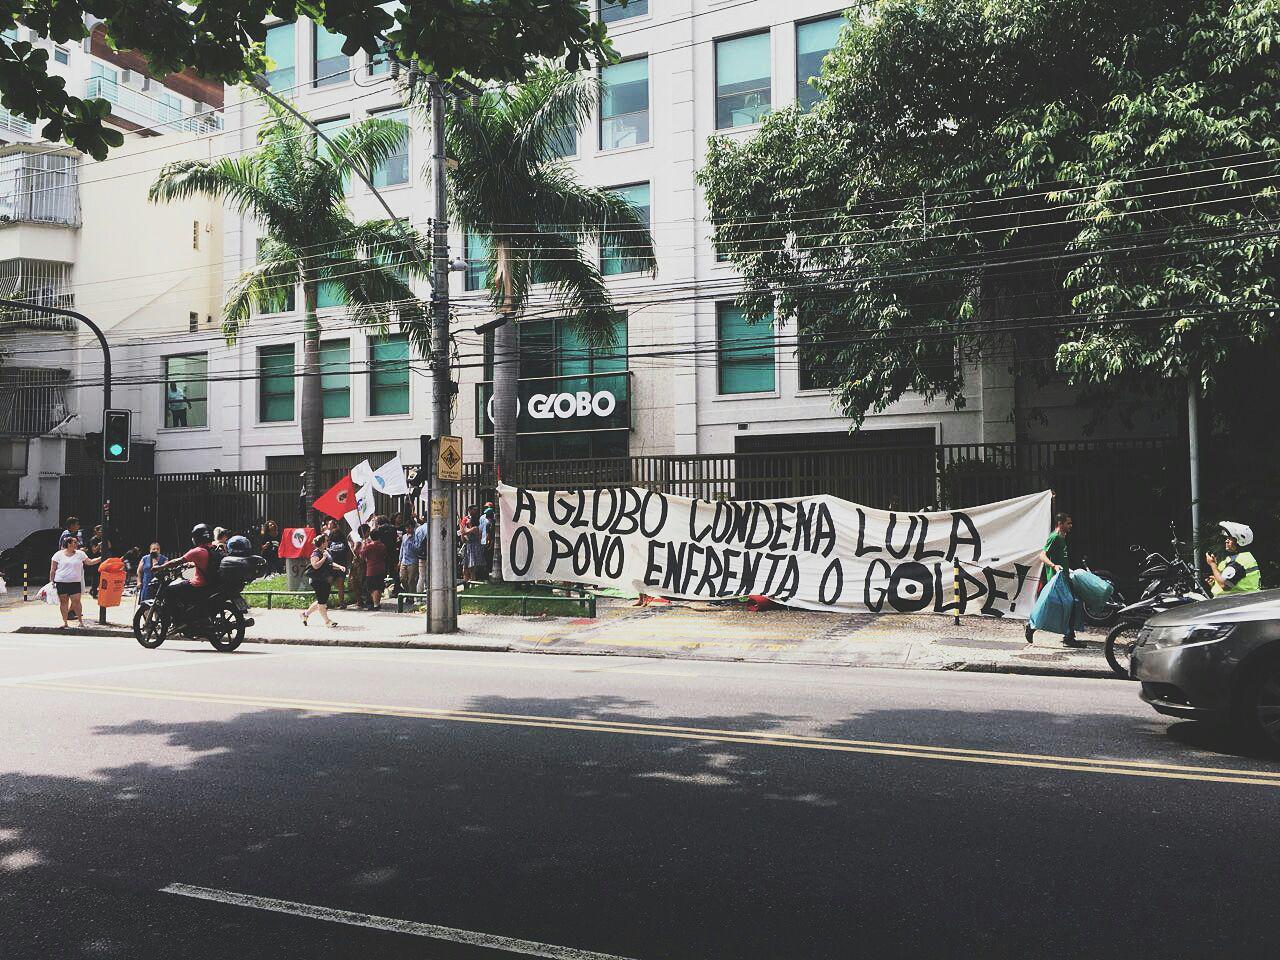 Manifestantes ocupam prédio da Rede Globo no Rio de Janeiro em defesa de Lula